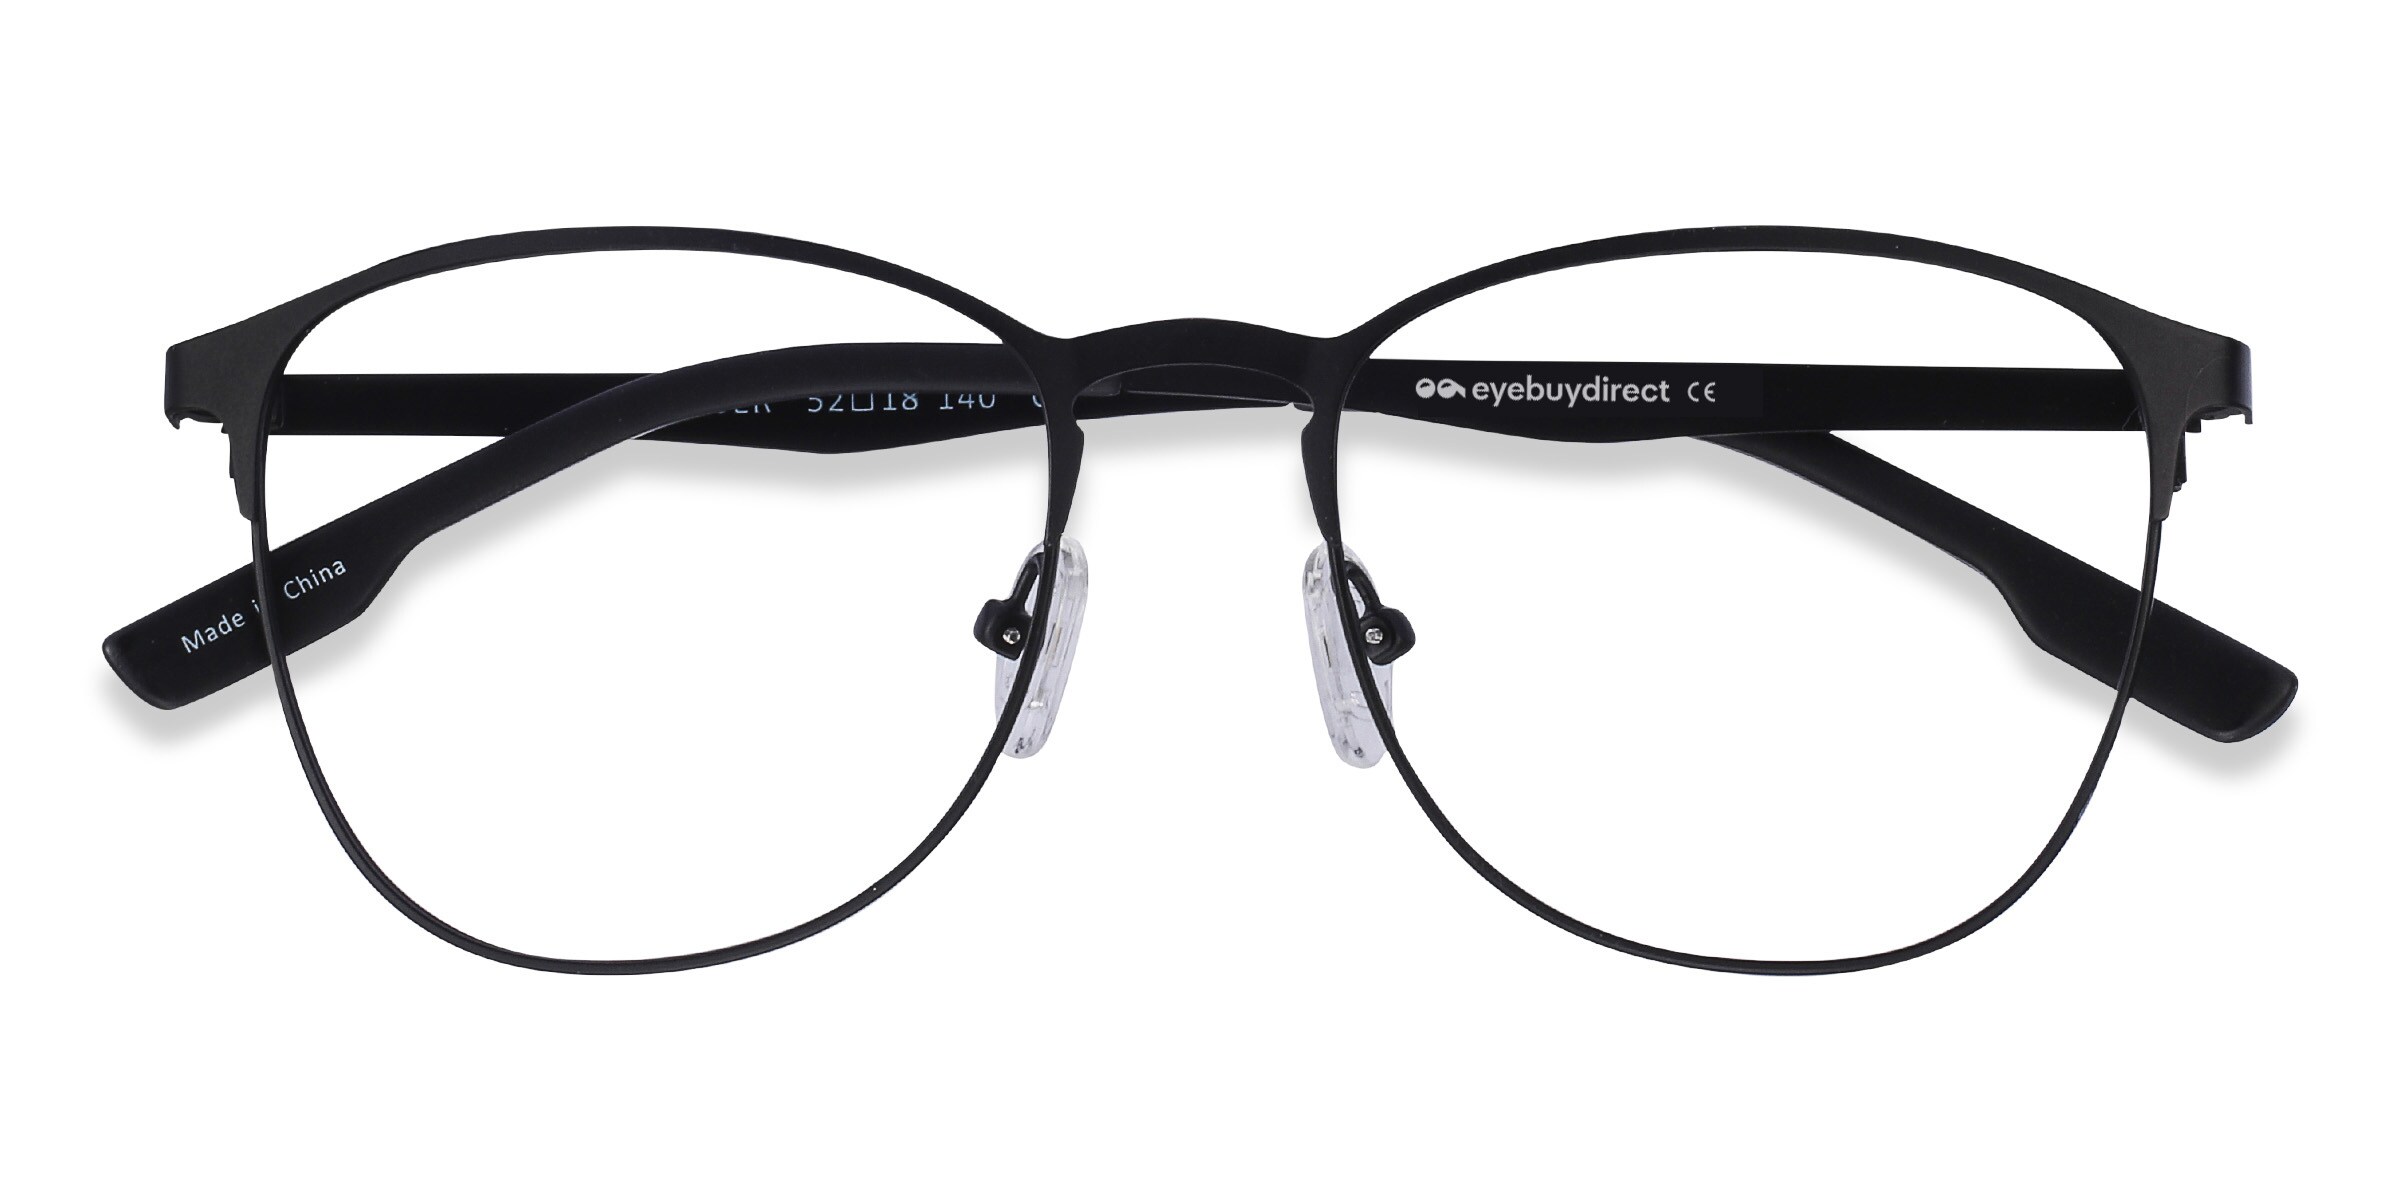 Buy Prescription Glasses Online $6 | Eyebuydirect